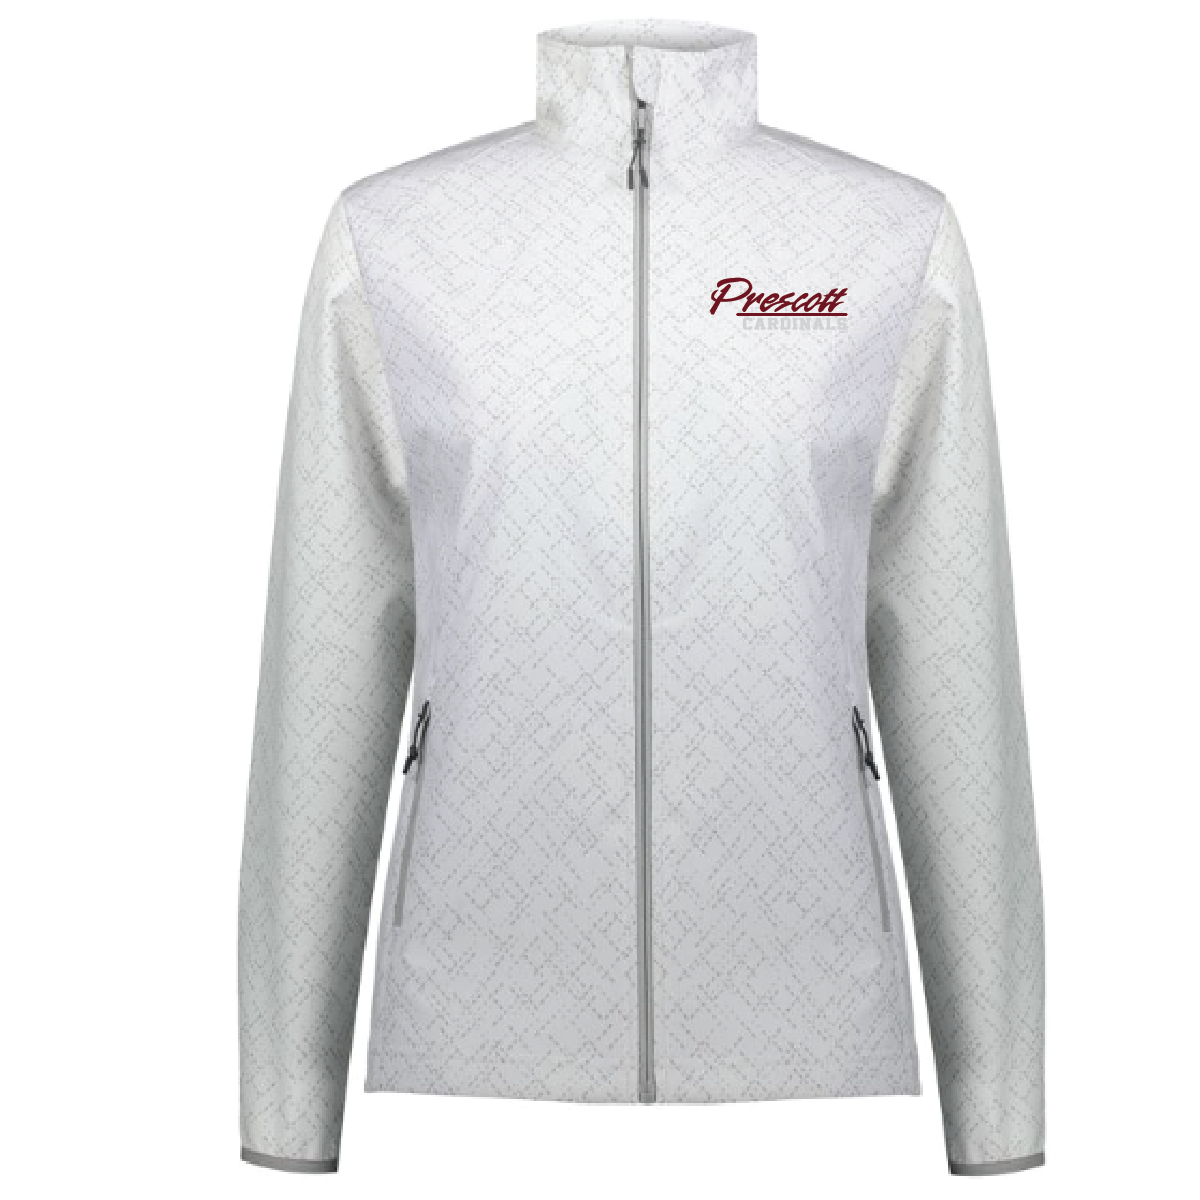 Prescott Retail Online Women's Featherlite Jacket